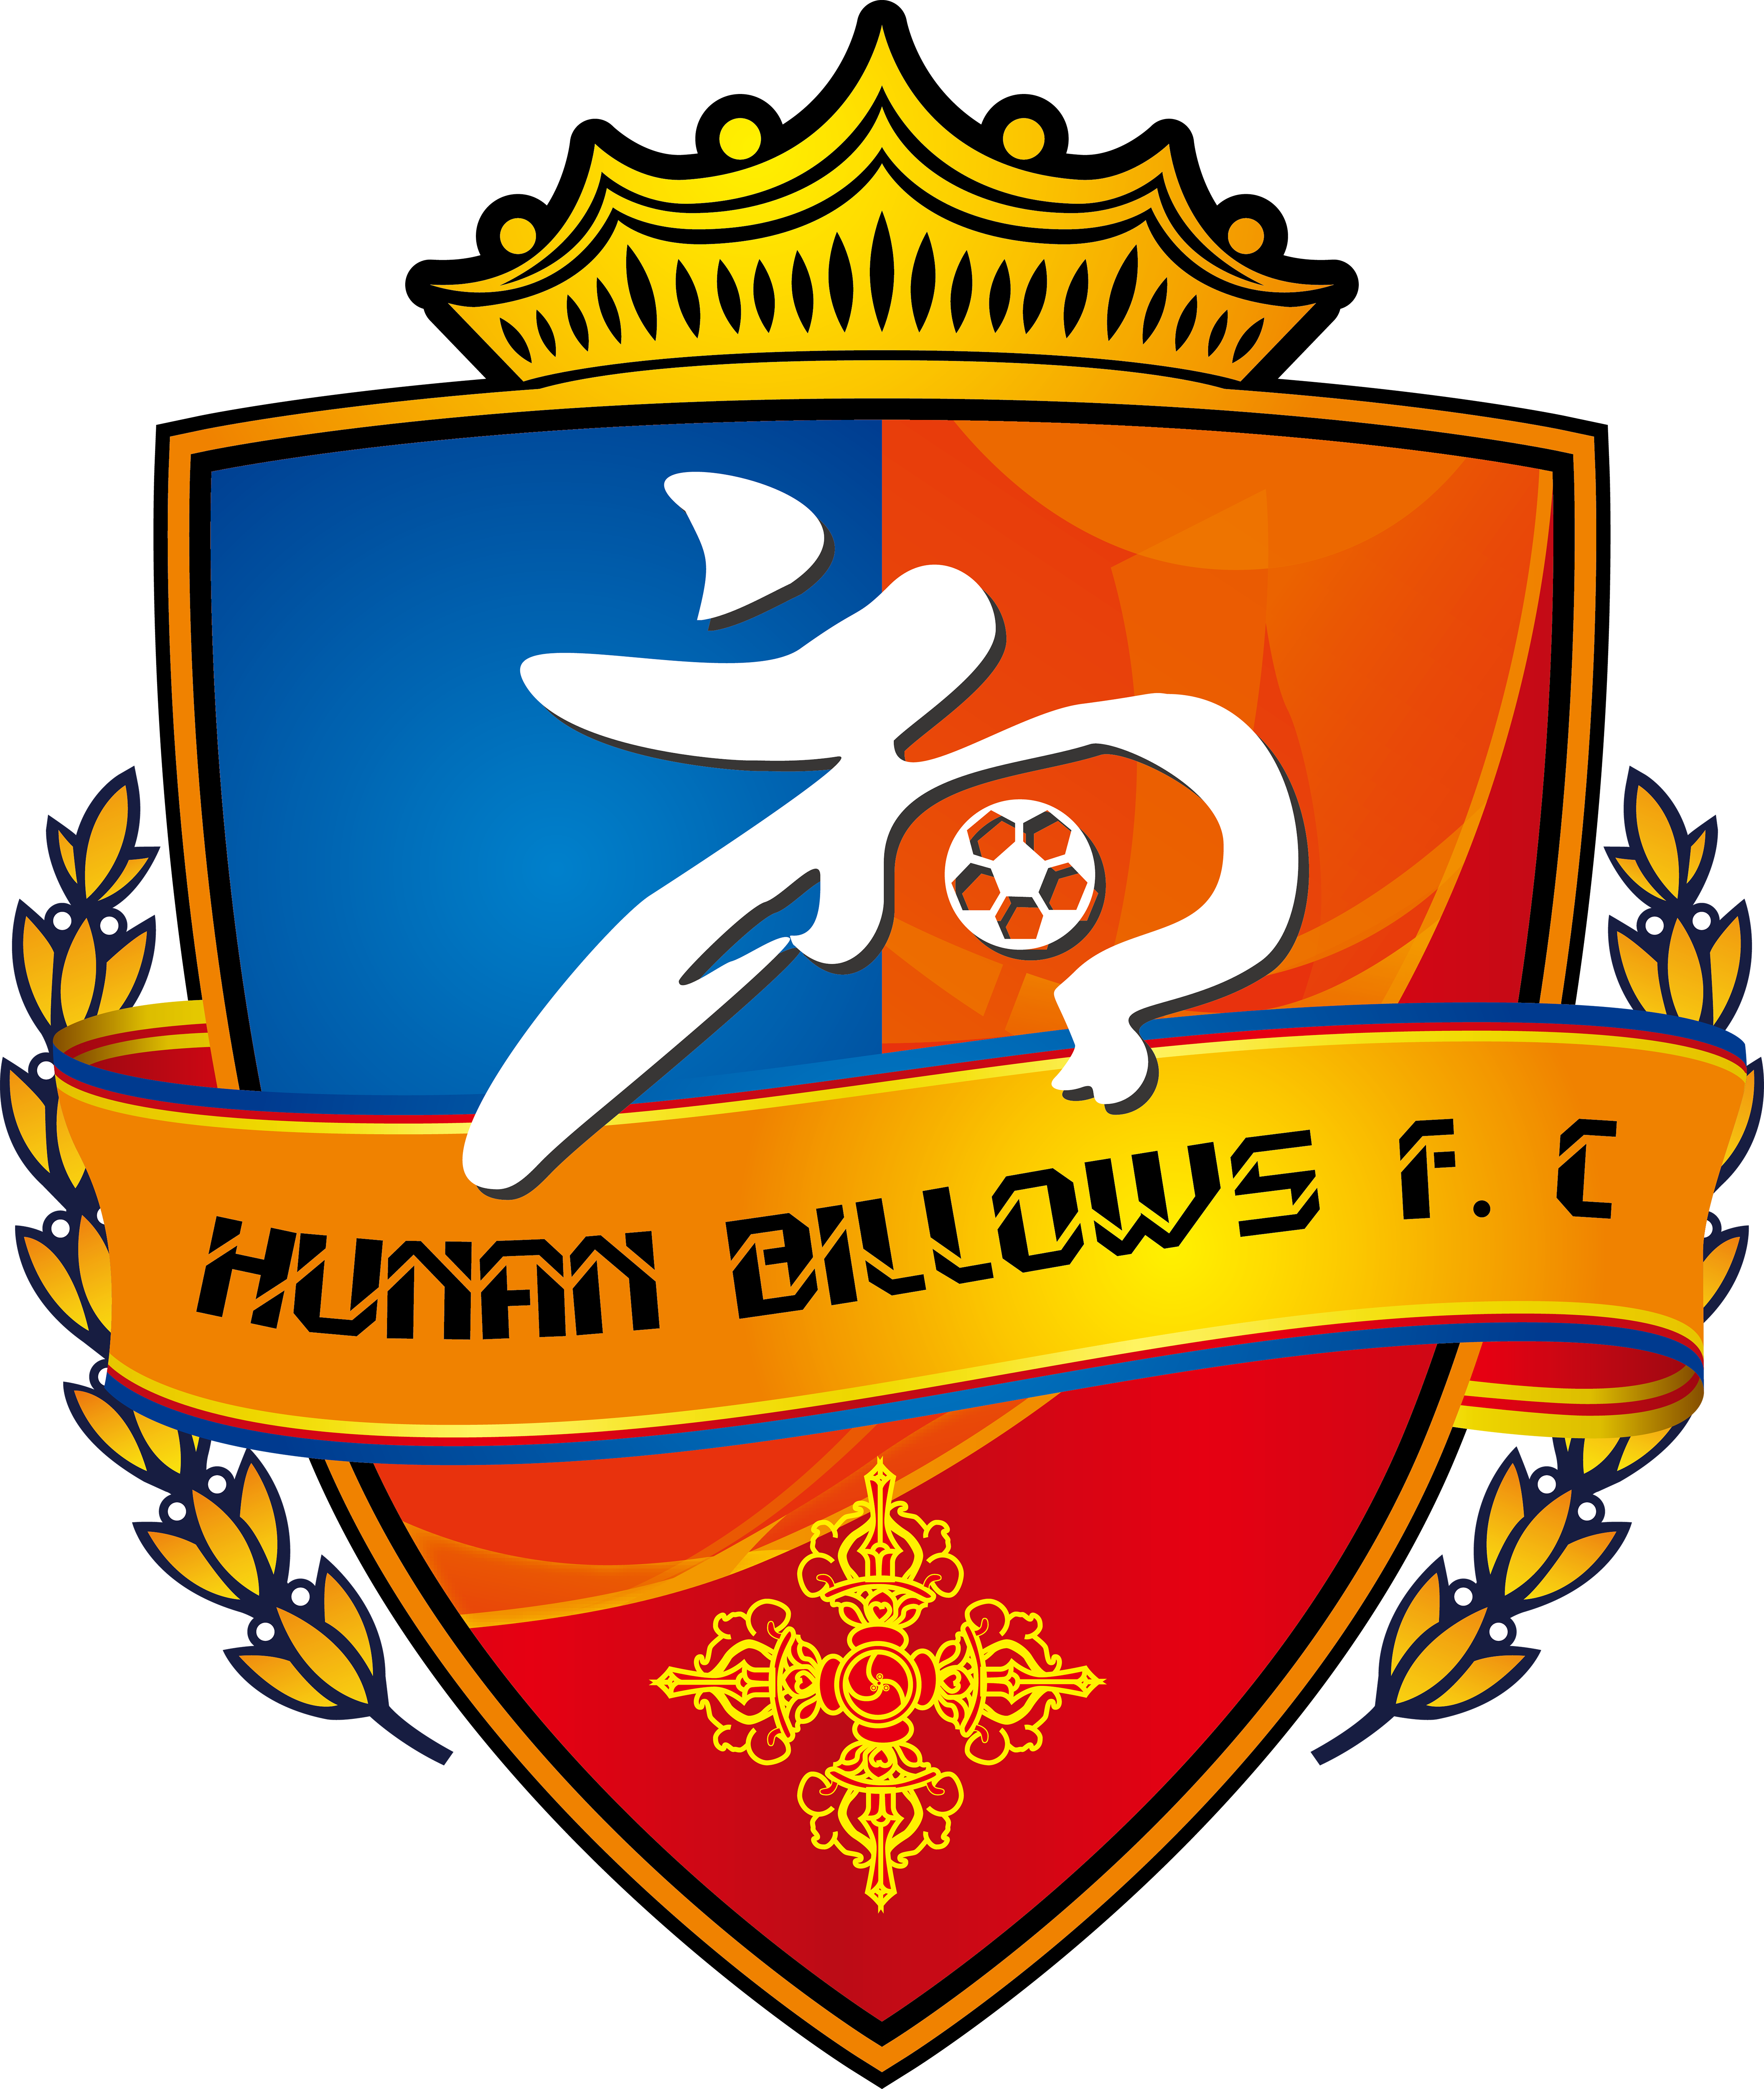 2022賽季中國足球協會乙級聯賽